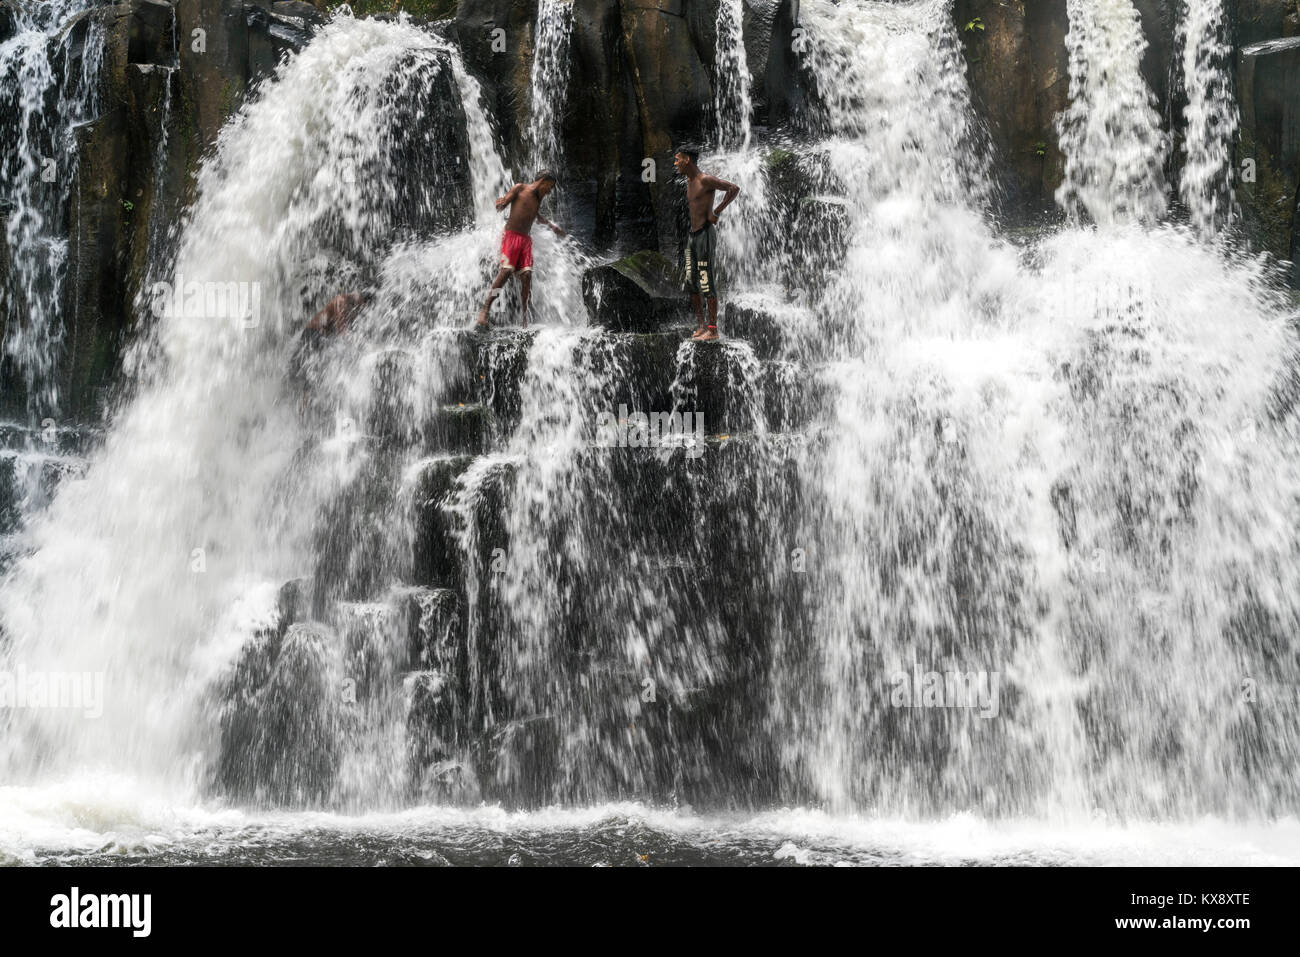 Einheimische Jugendliche springen und baden im Wasserfall  Rochester Falls bei  Souillac, Mauritius, Afrika |   local youth bathing and jumping into t Stock Photo